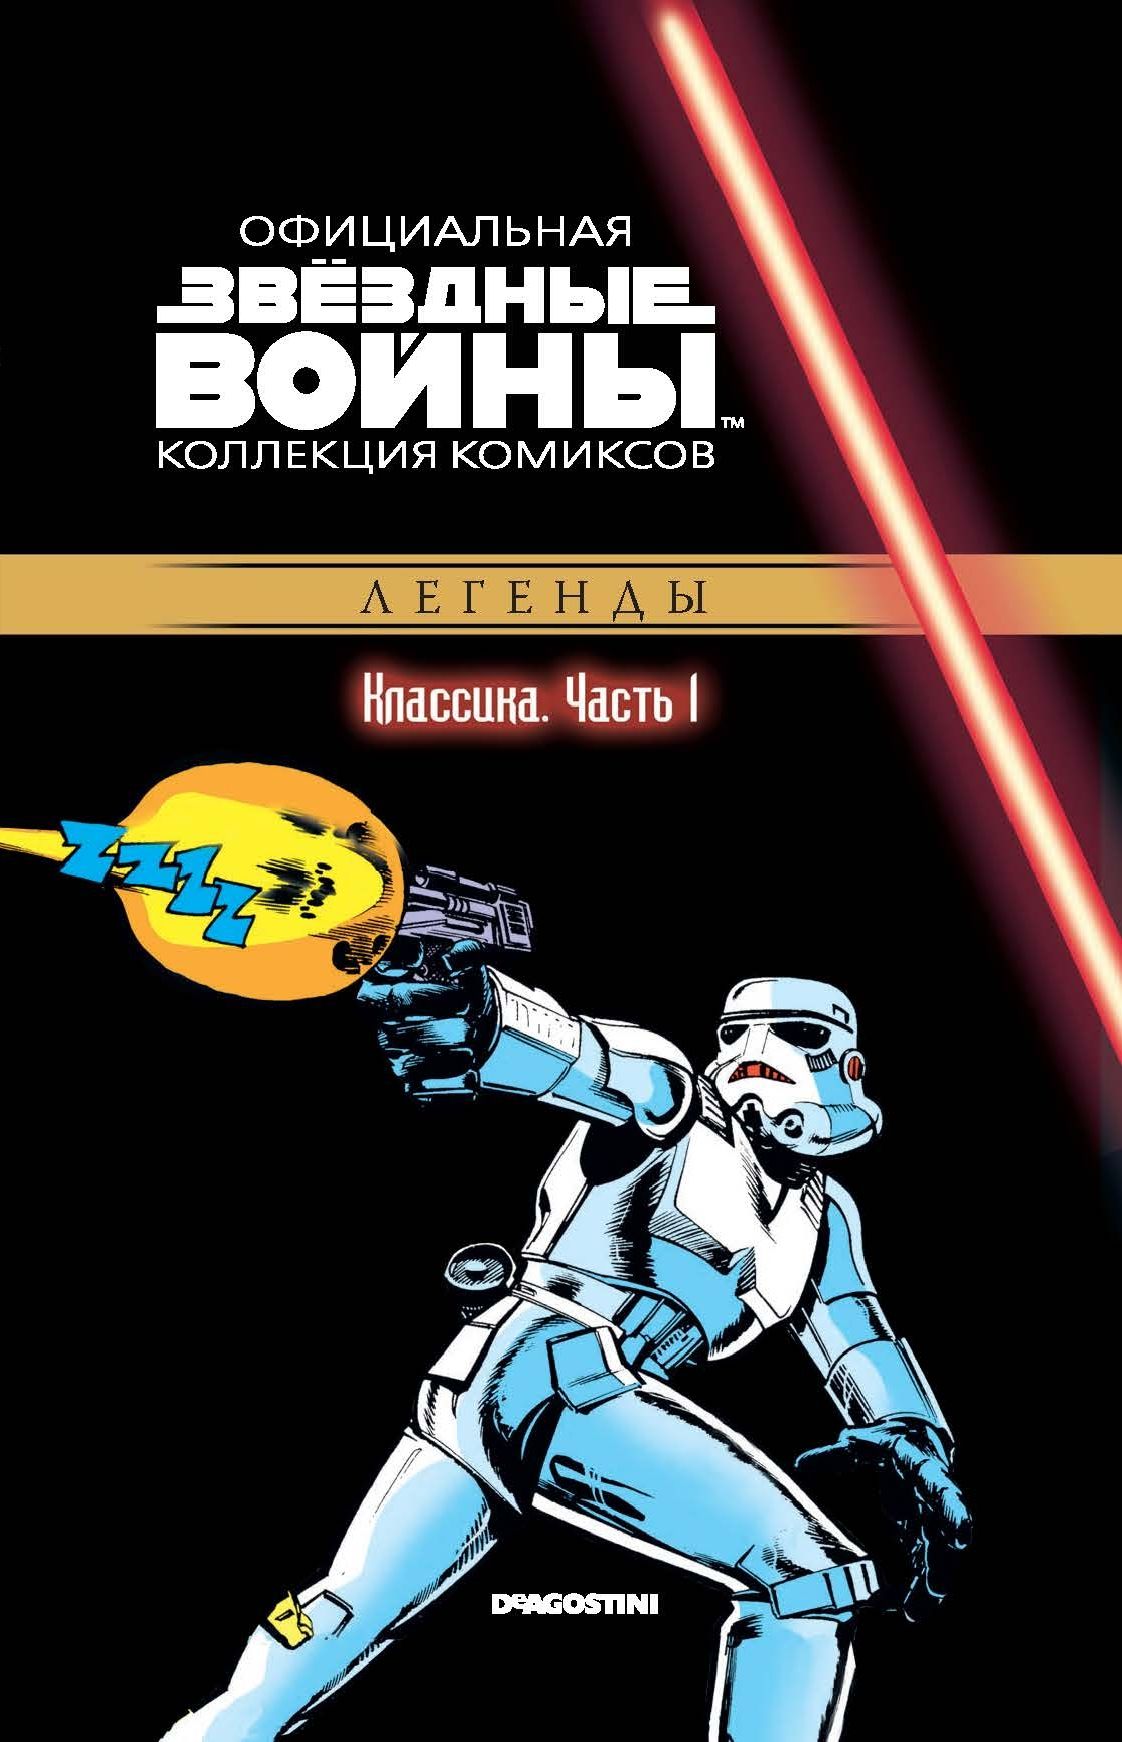 Комикс на русском языке «Звёздные войны. Официальная коллекция комиксов. Том 1. Классика. Часть 1»